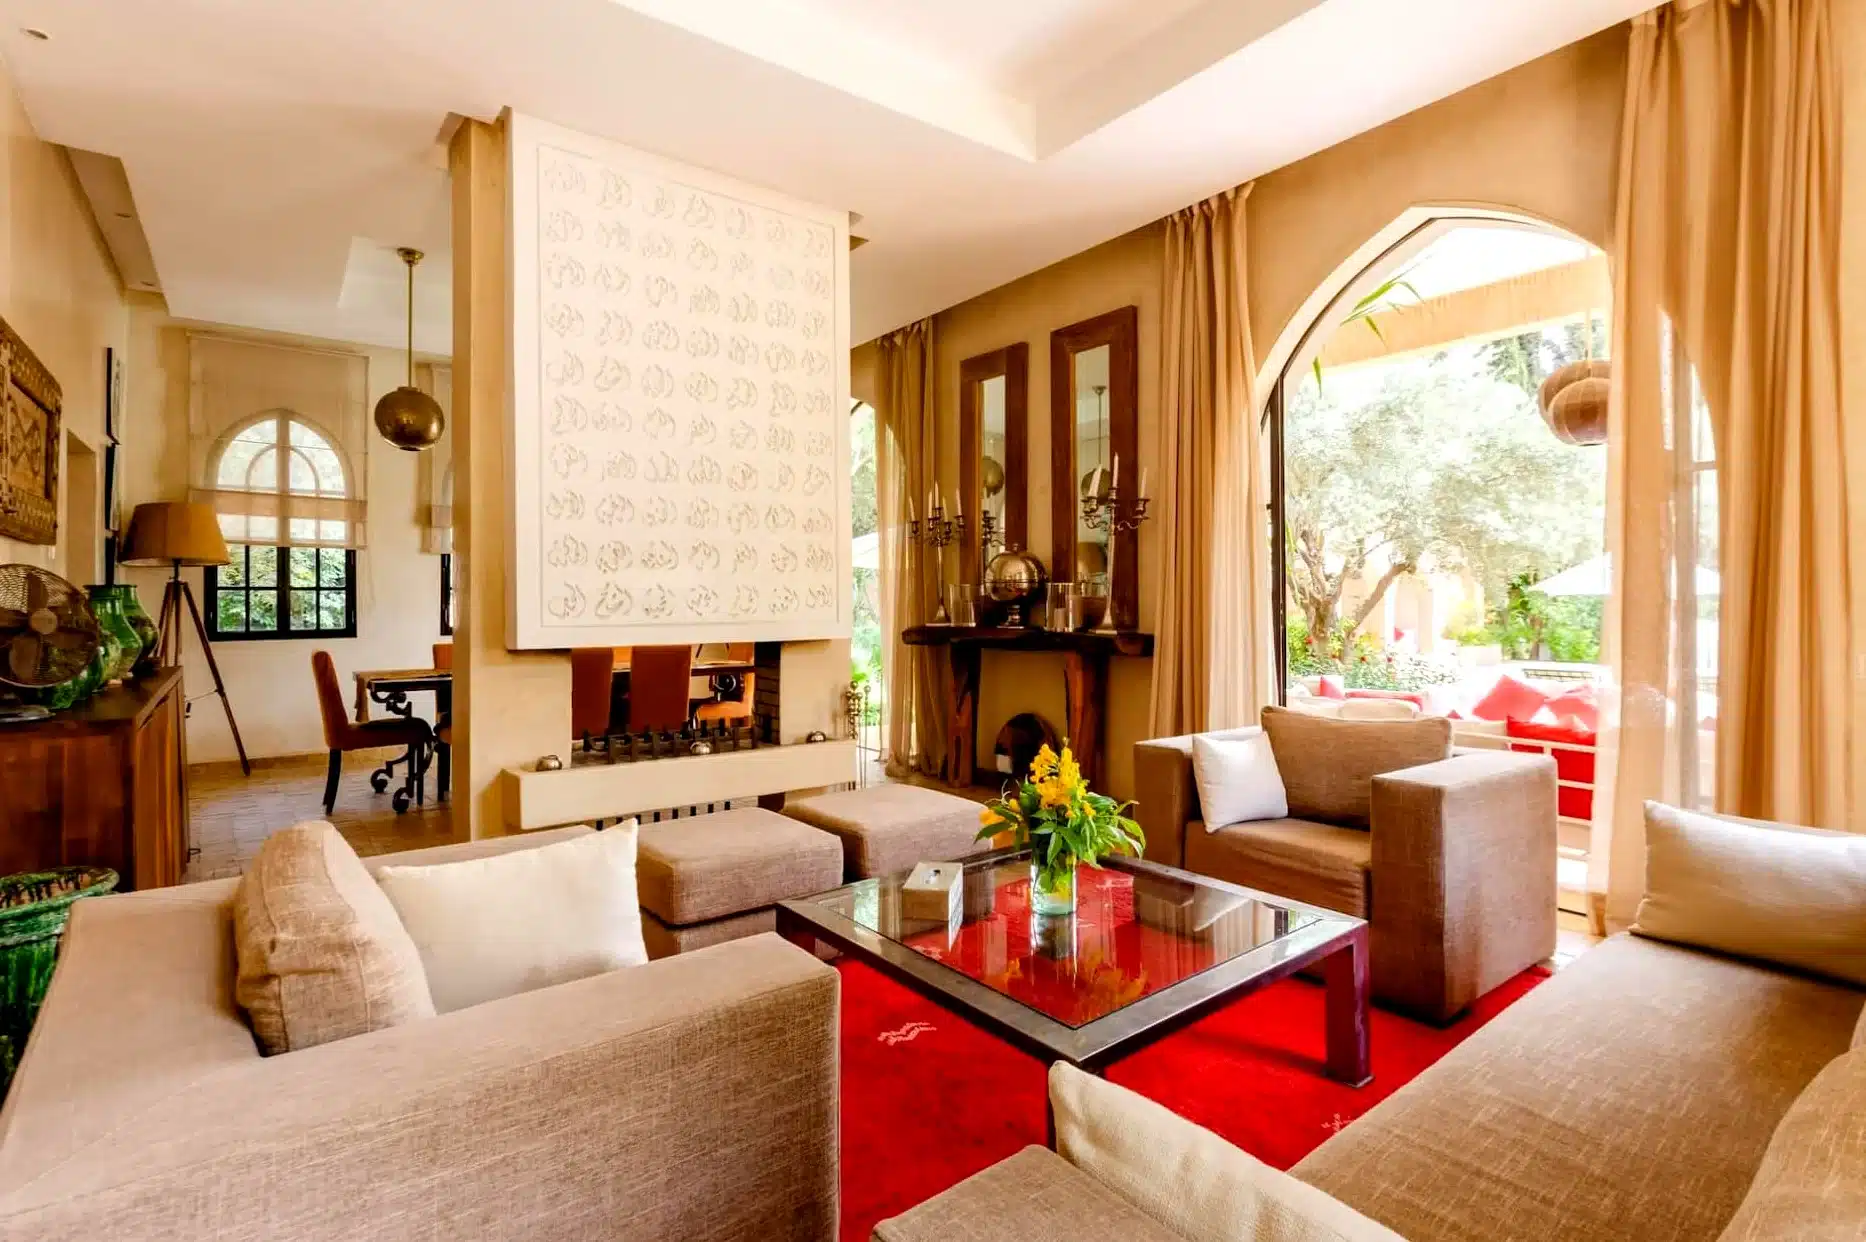 Luxury Marrakesh Villa, fundraiser auction items, live auction items